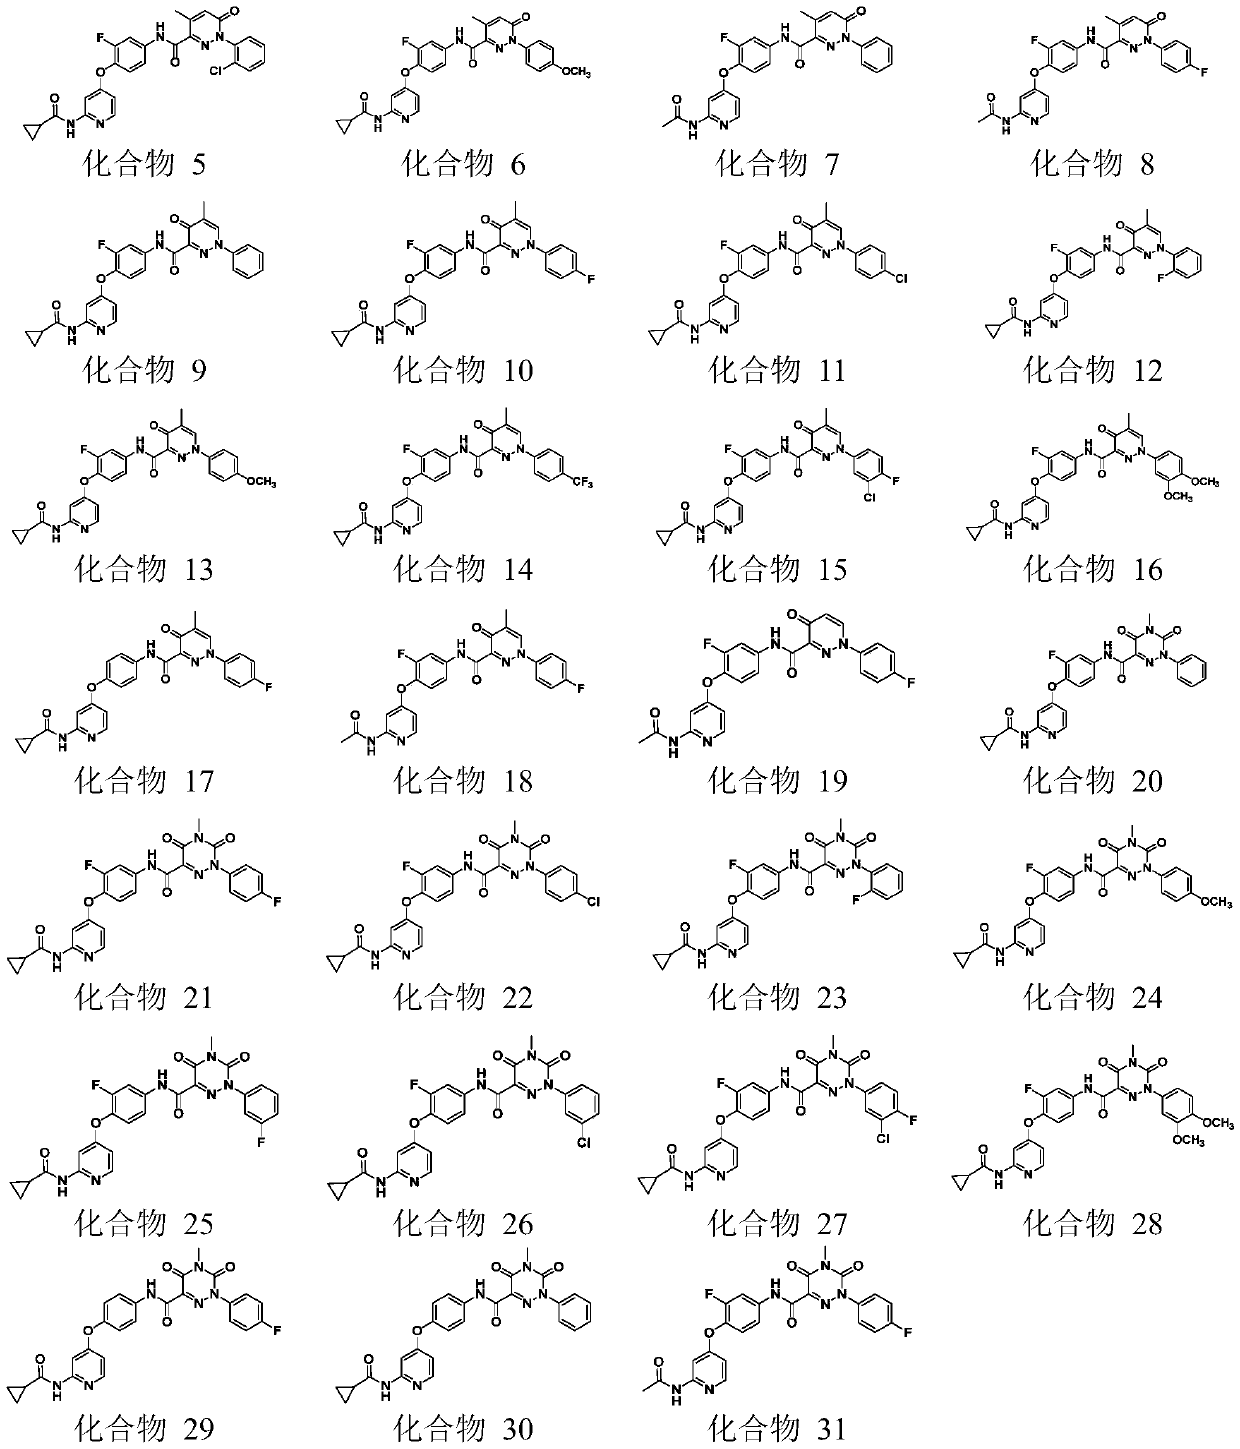 4-phenoxy pyridine derivative containing 3-pyridazinone structure, 4-pyridazinone structure and 1,2,4-triazinone structure, and applications thereof.